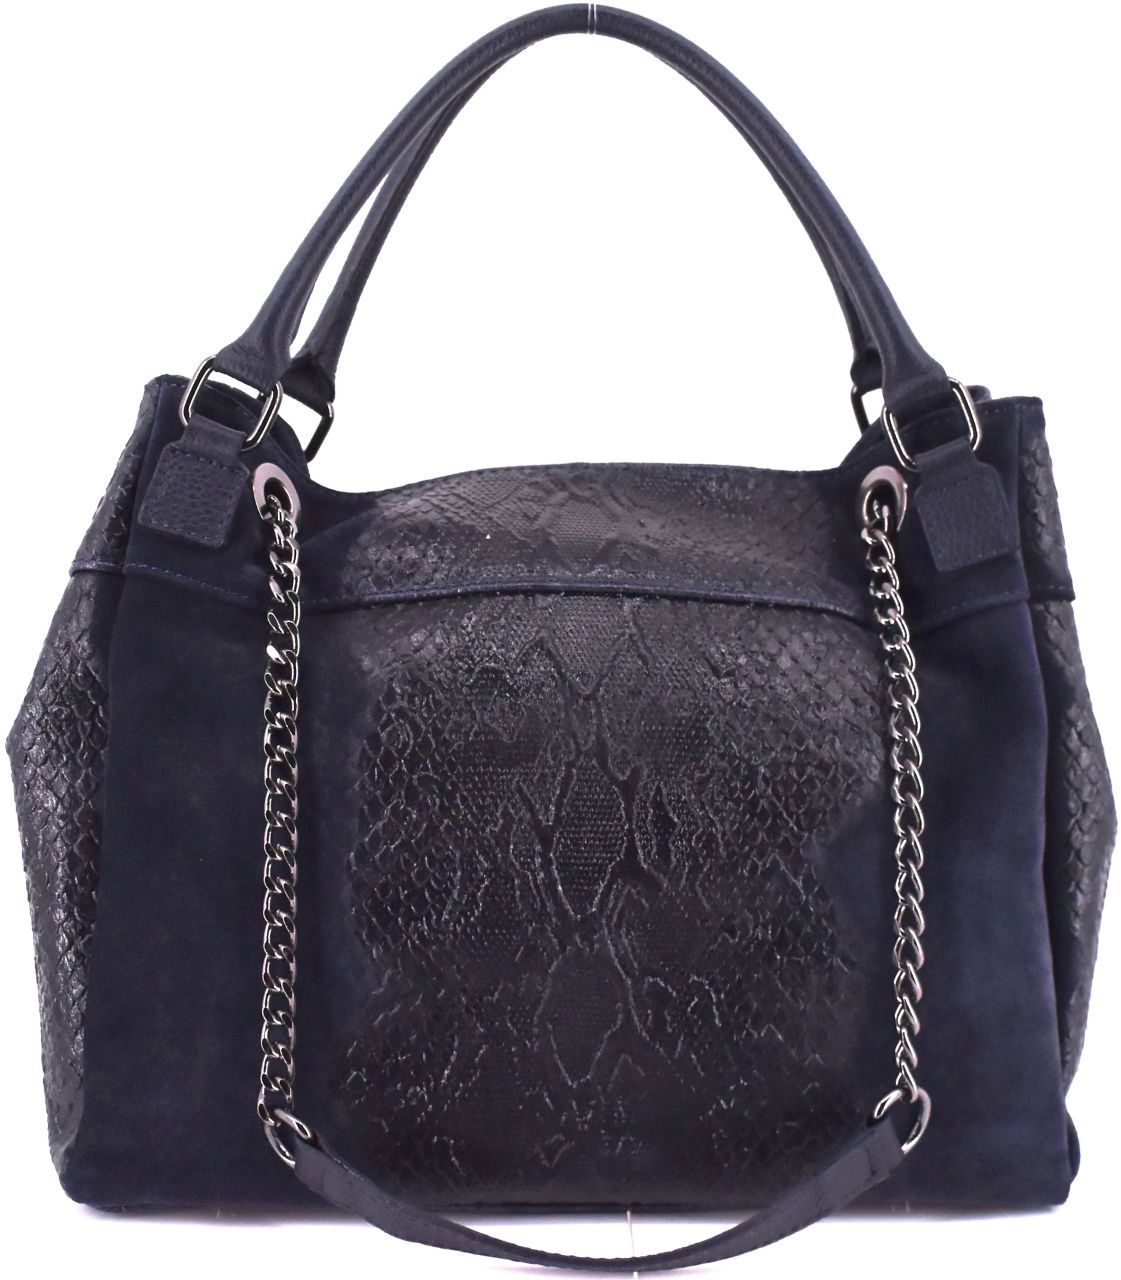 Moderní dámská kožená kabelka Arteddy s hadím vzorem - tmavě modrá 31032